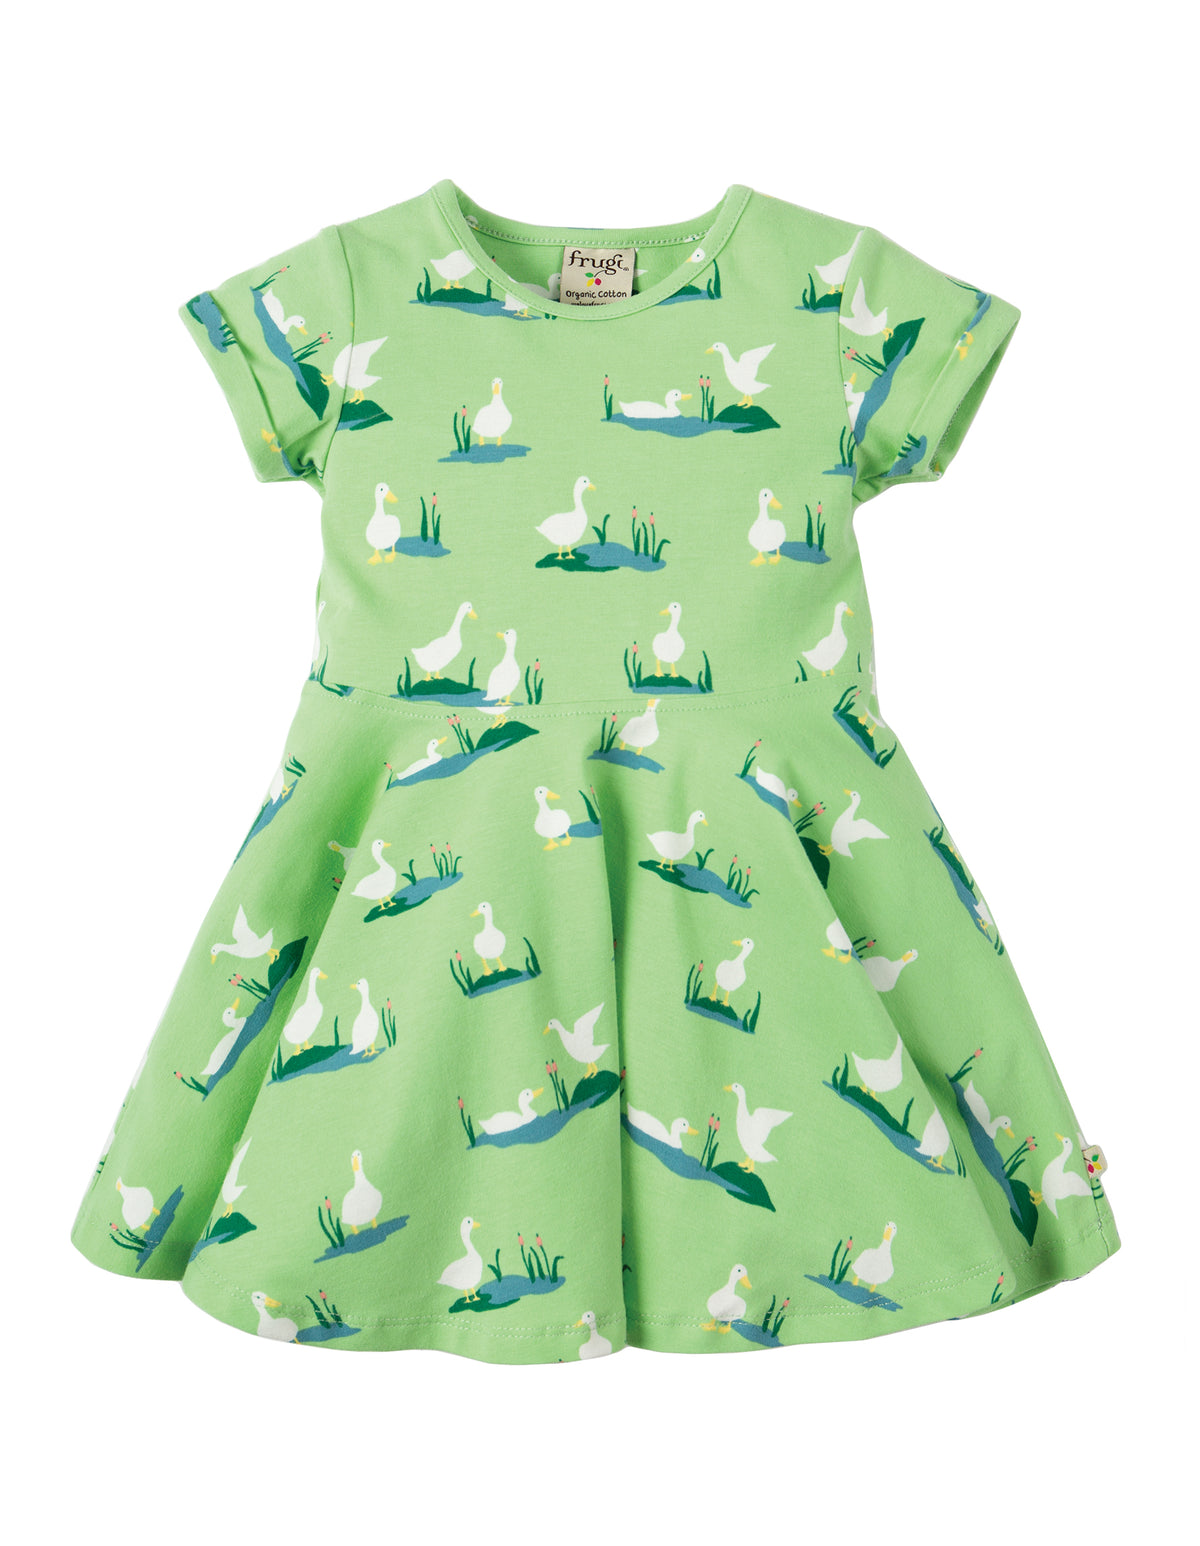 Grünes Kleid mit Enten von der Marke Frugi